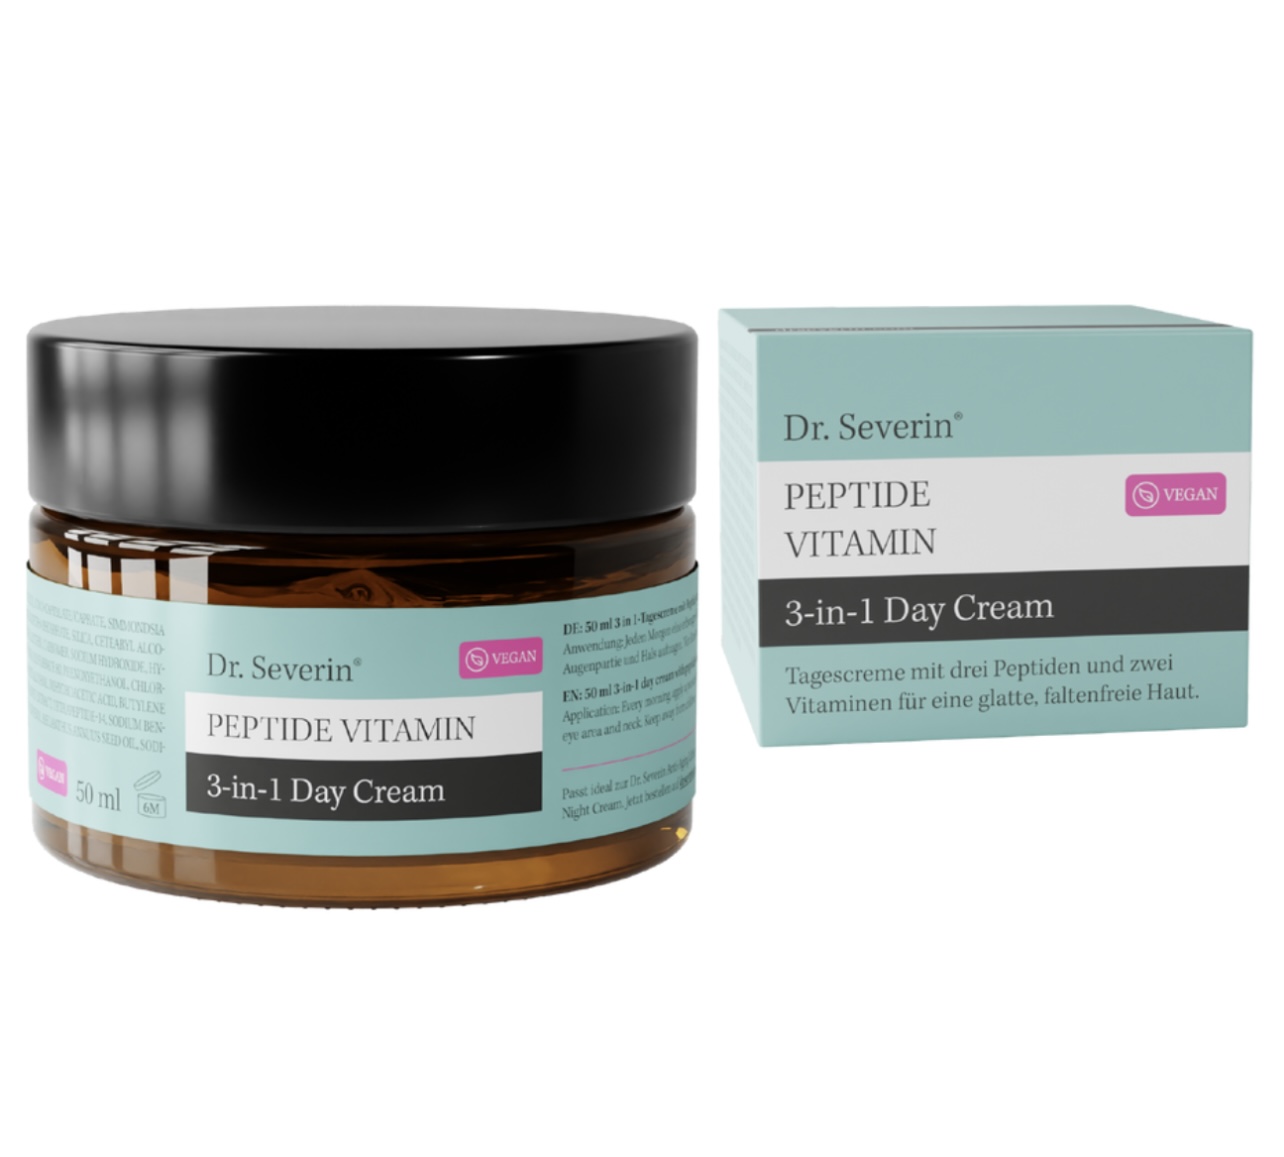 Dr. Severin Peptide Vitamin 3-in-1 Day Cream 50 ml